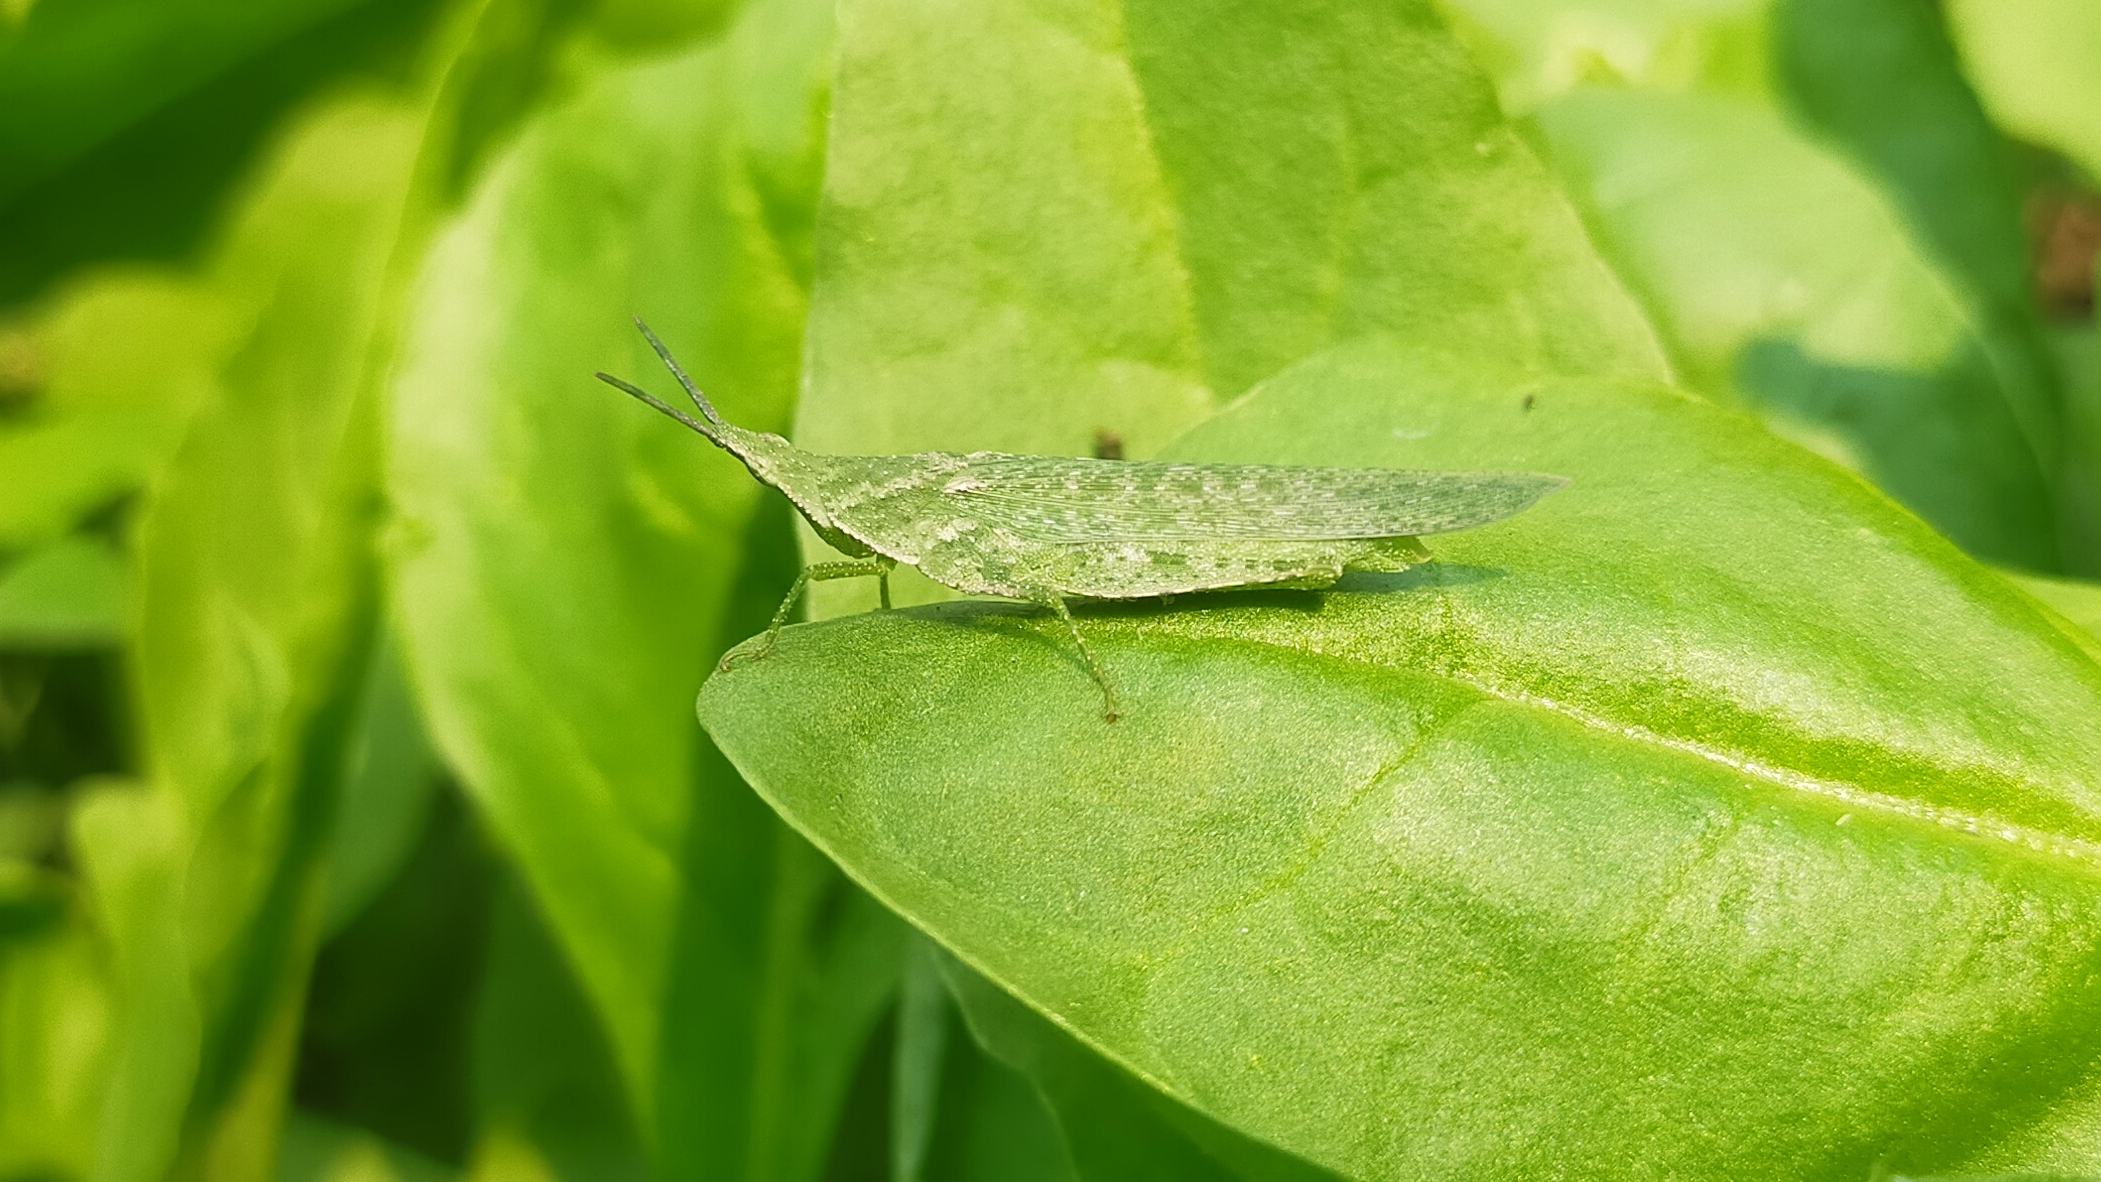 Green grasshopper on leaf